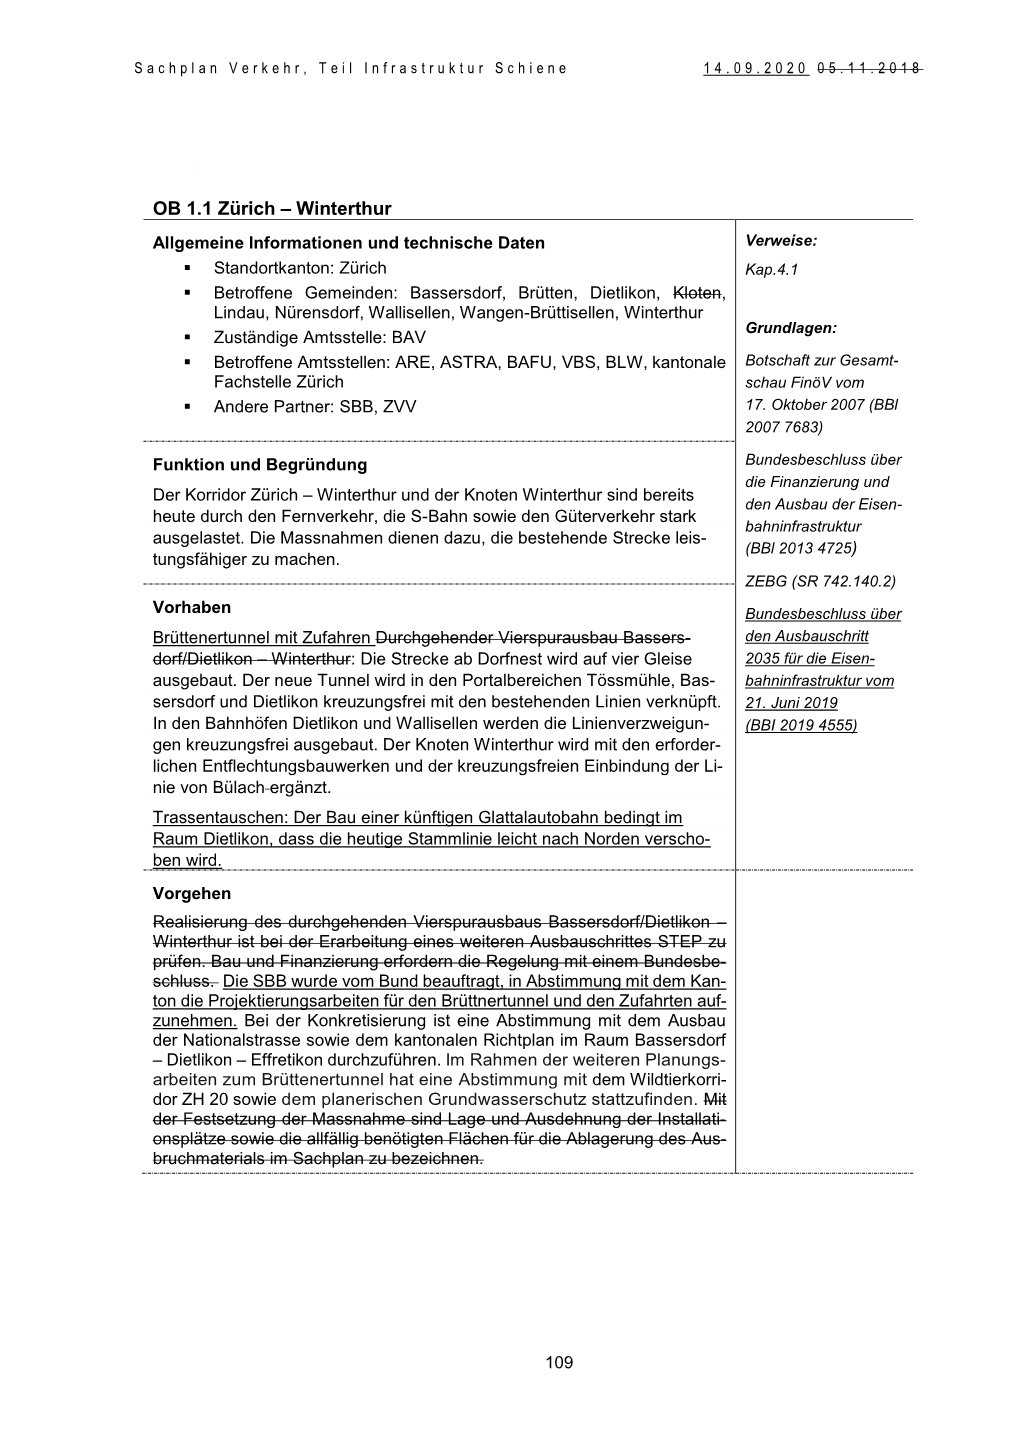 OB 1.1 Zürich – Winterthur Allgemeine Informationen Und Technische Daten Verweise